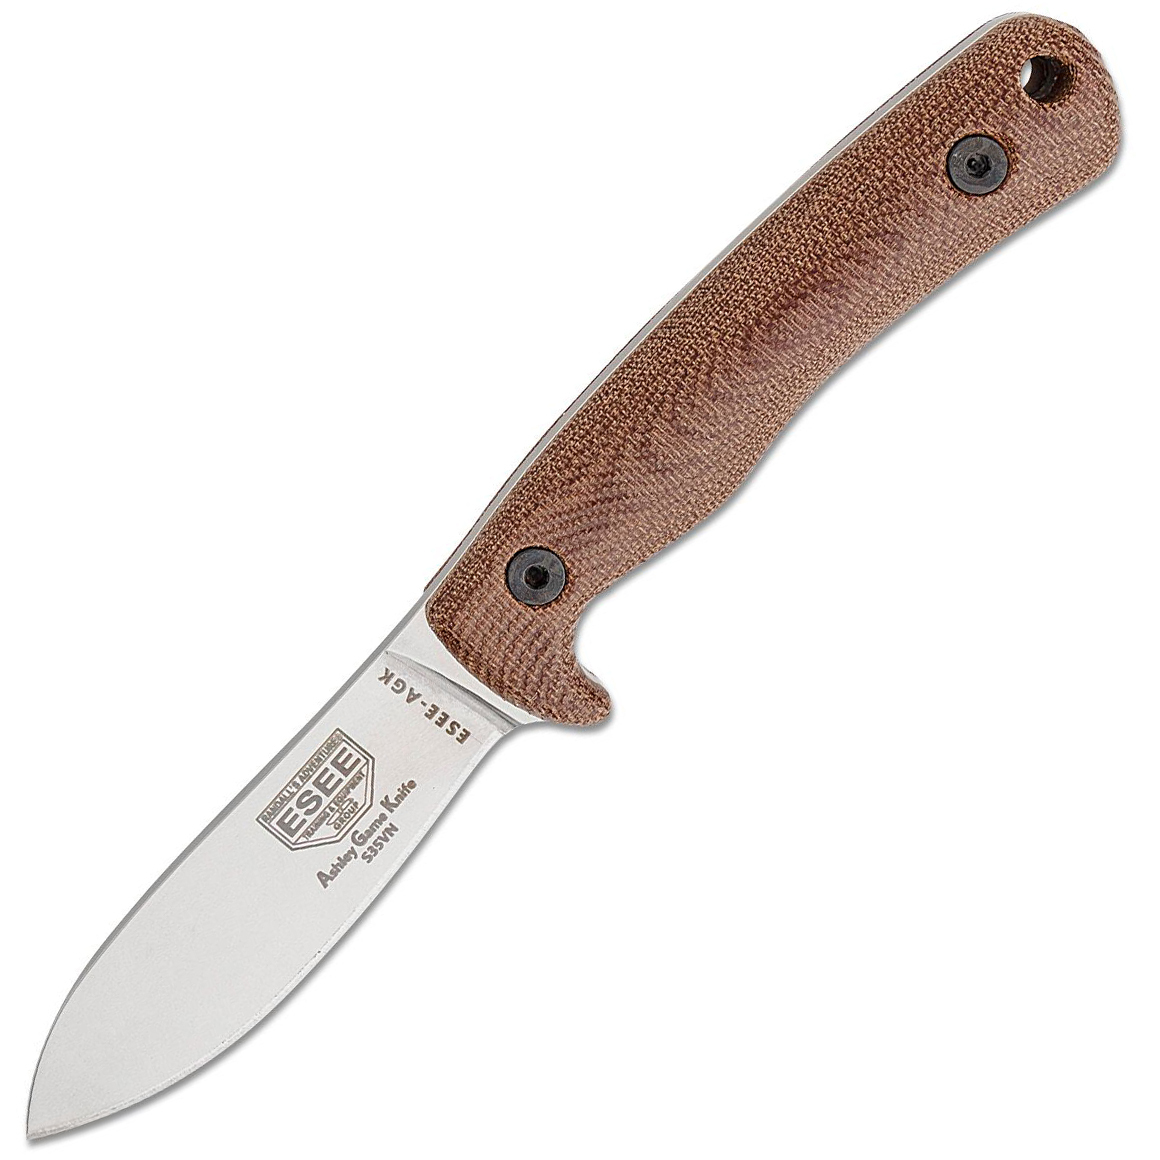 ESEE-AGK35V HUNTING KNIFE lovecký nôž 9,1 cm, Stonewash, hnedá, Micarta, puzdro Kydex